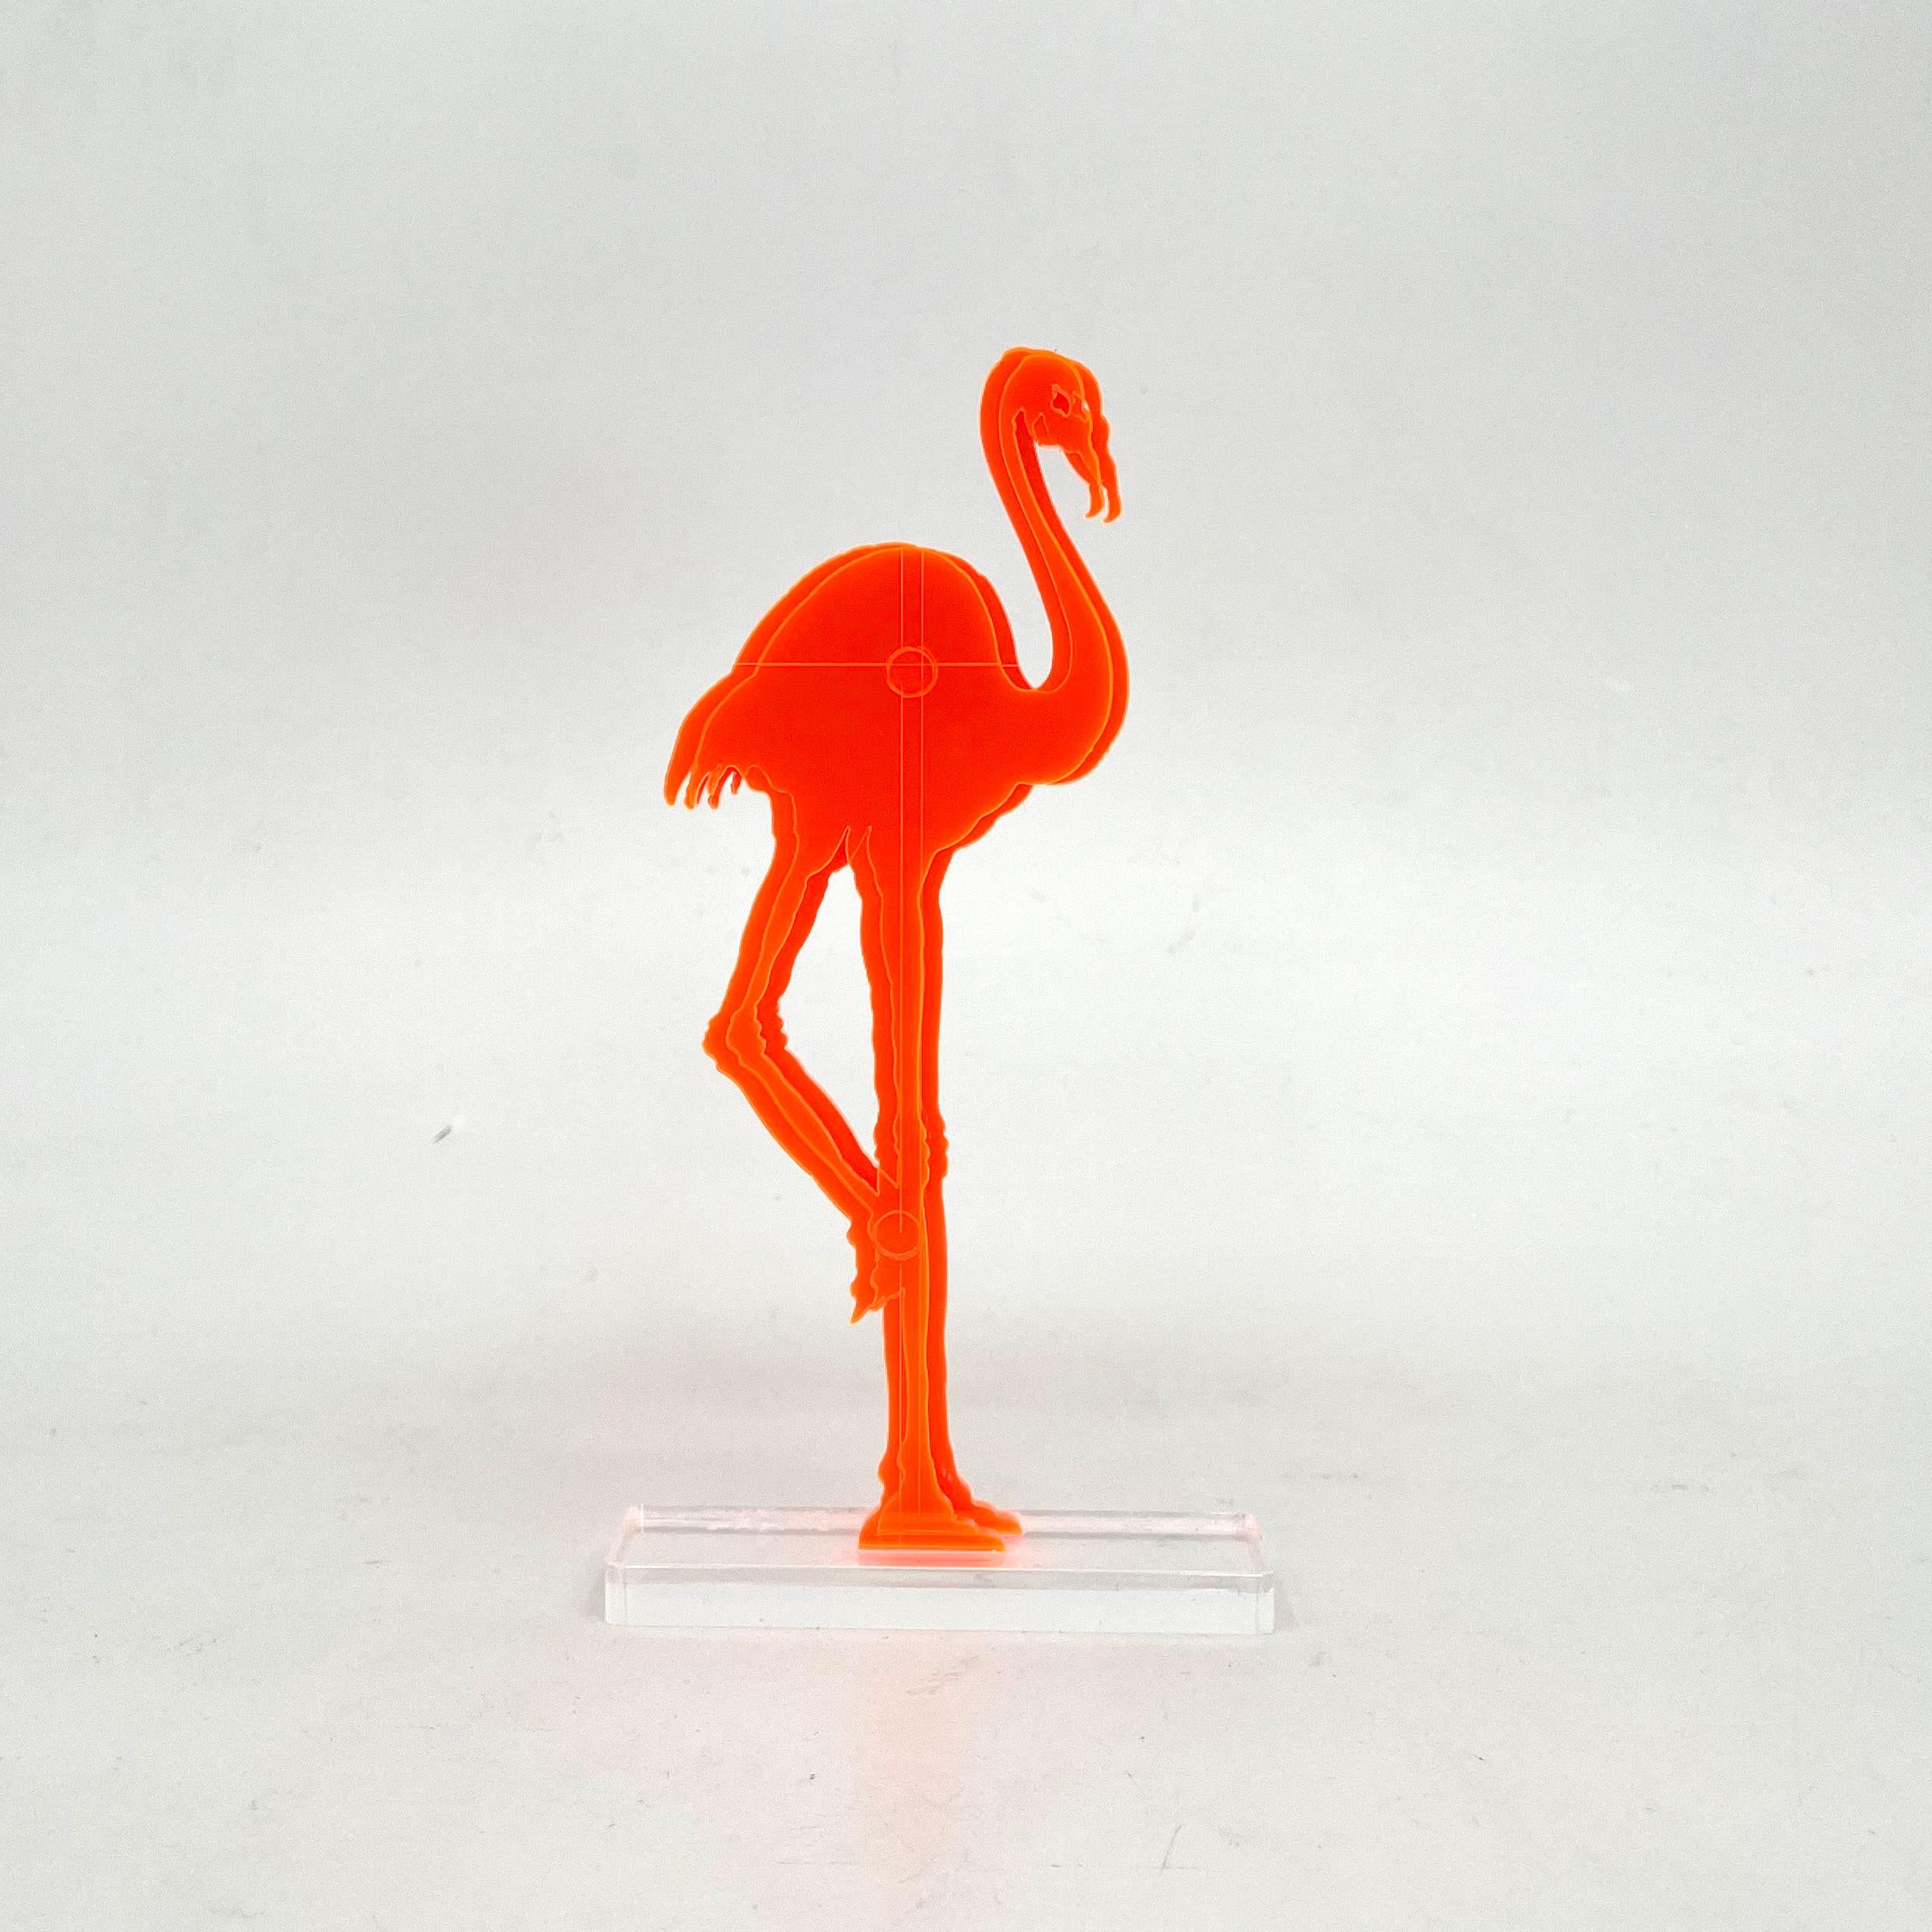 Gino MAROTTA (1935-2012)
Fenicottero artificiale, 2010
Edition Artbeat arrêtée
Sculpture, multiple en méthacrylate coloré orange et découpé. Signé sur la base. 
Haut. : 19 cm Long. : 10 cm

Gino MAROTTA (1935-2012)
Fenicottero artificiale,